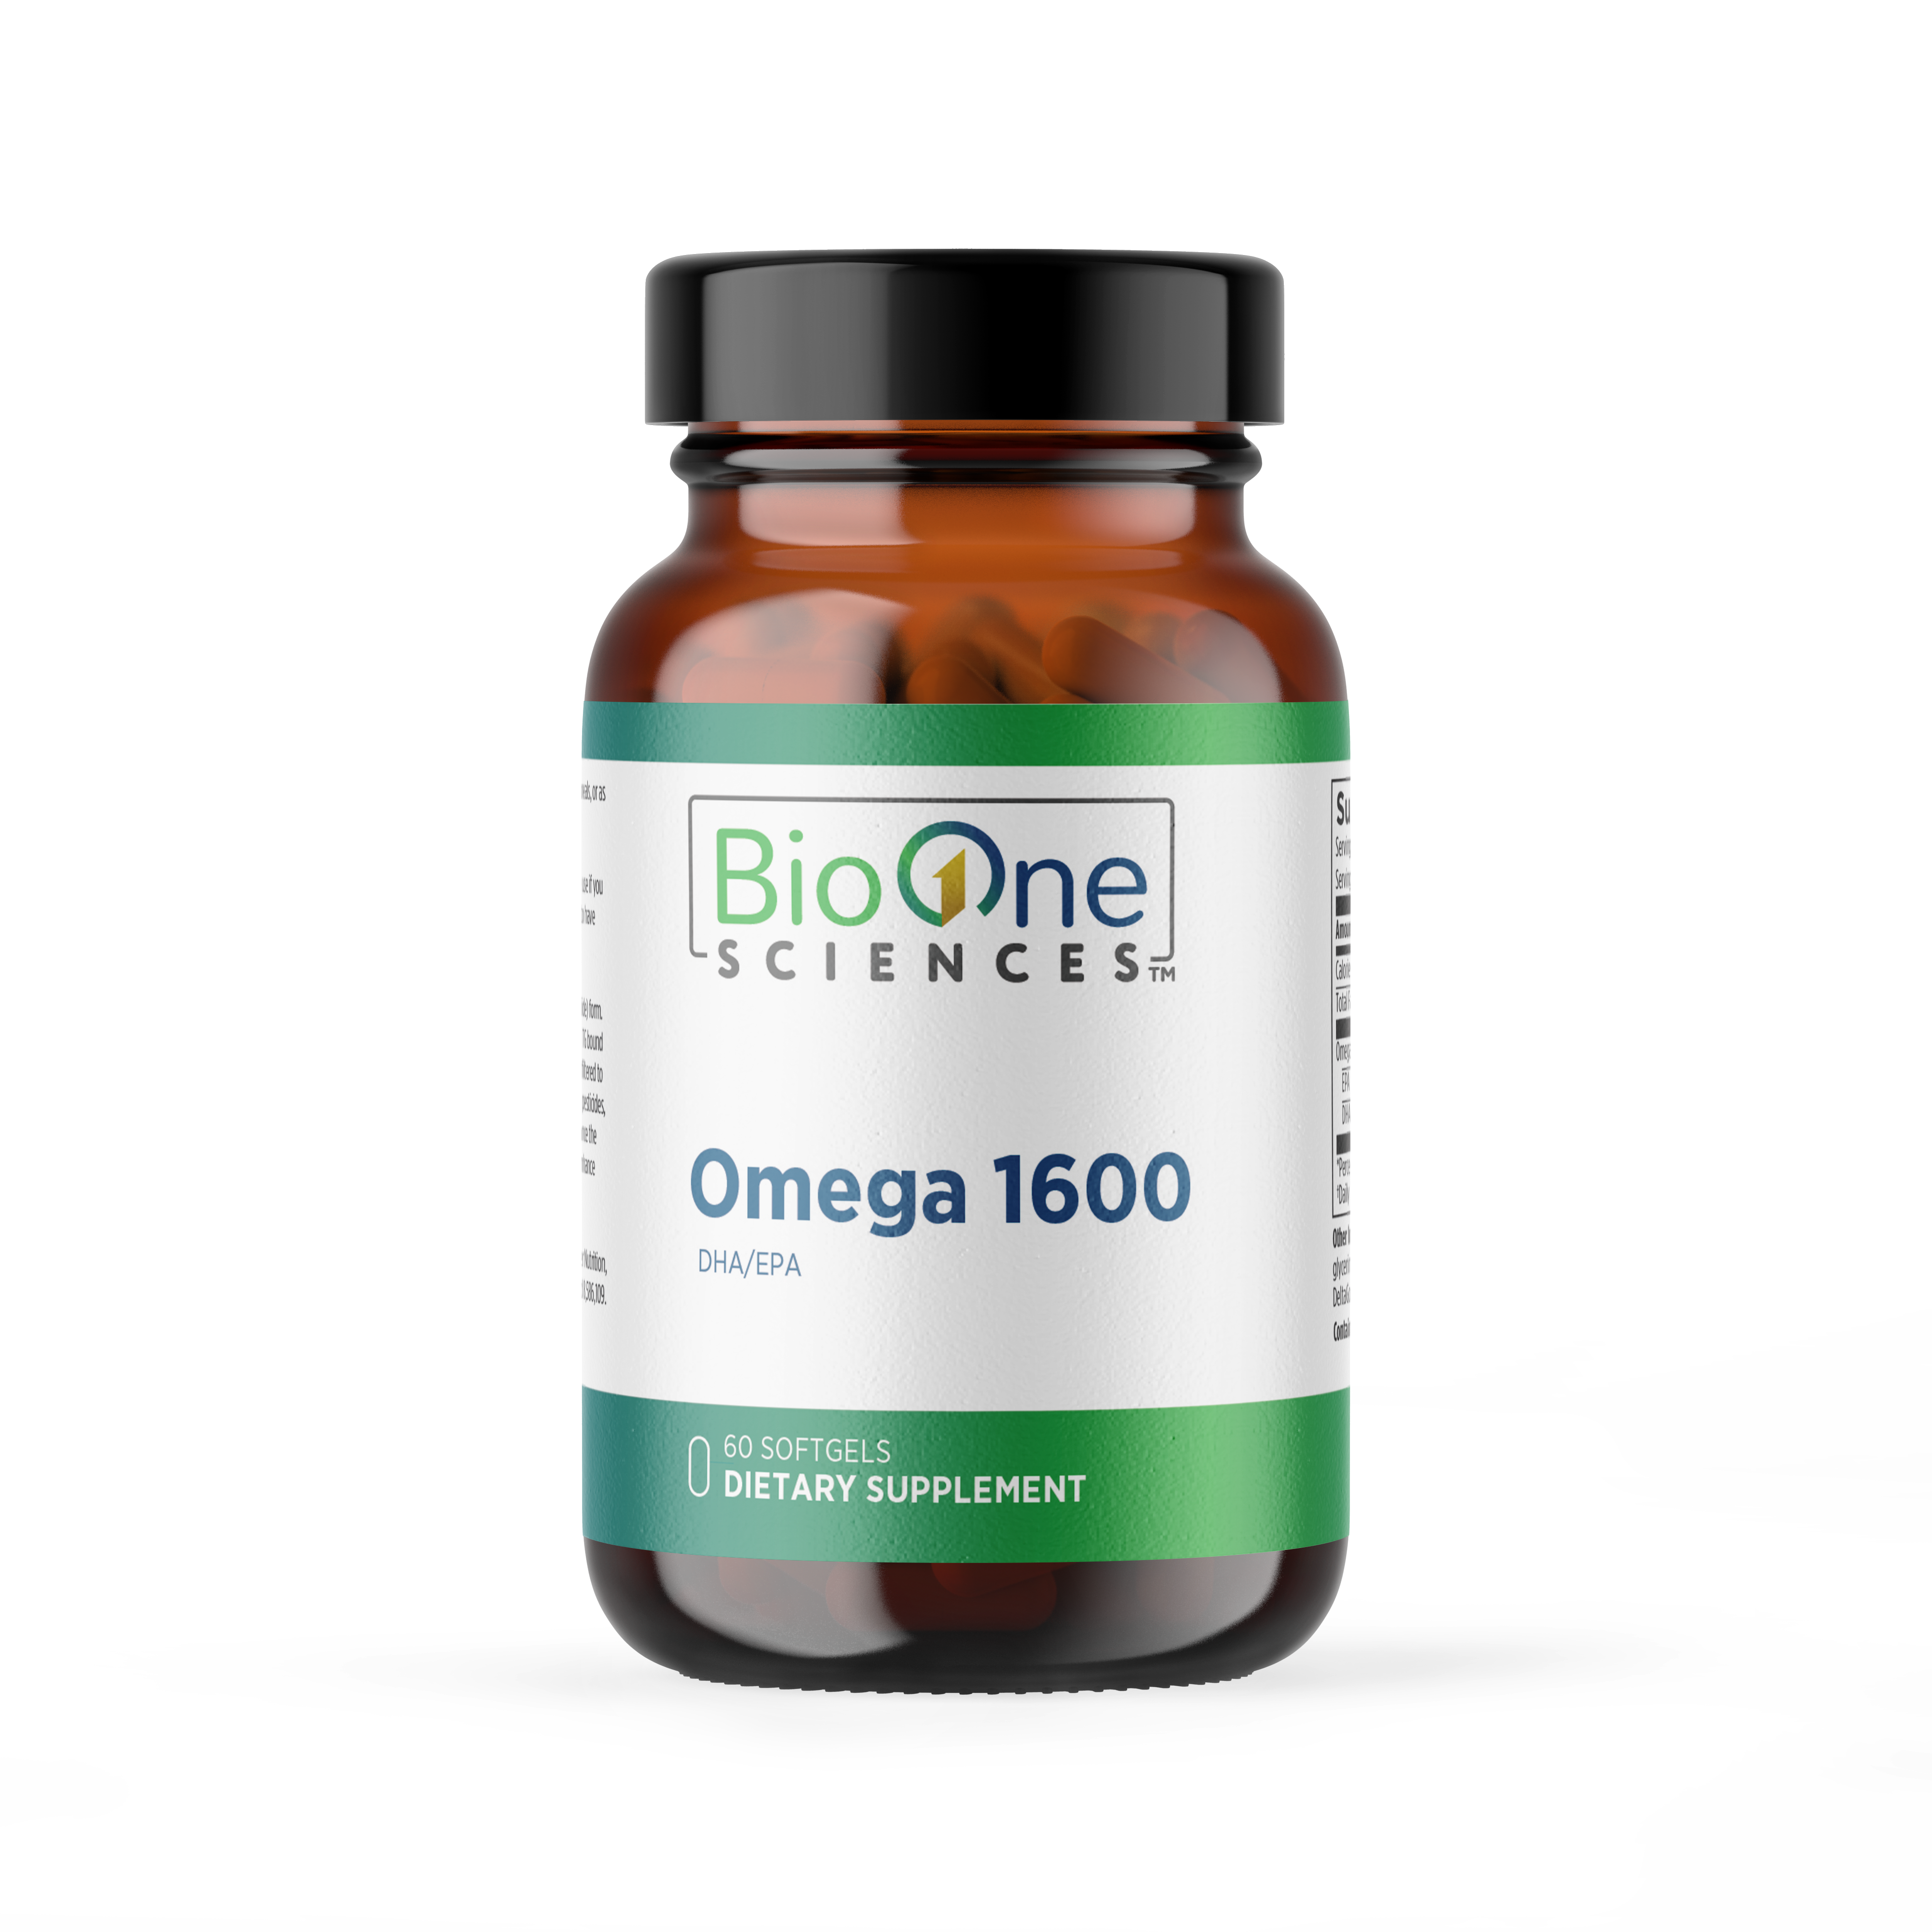 Omega 1600 (DHA/EPA)